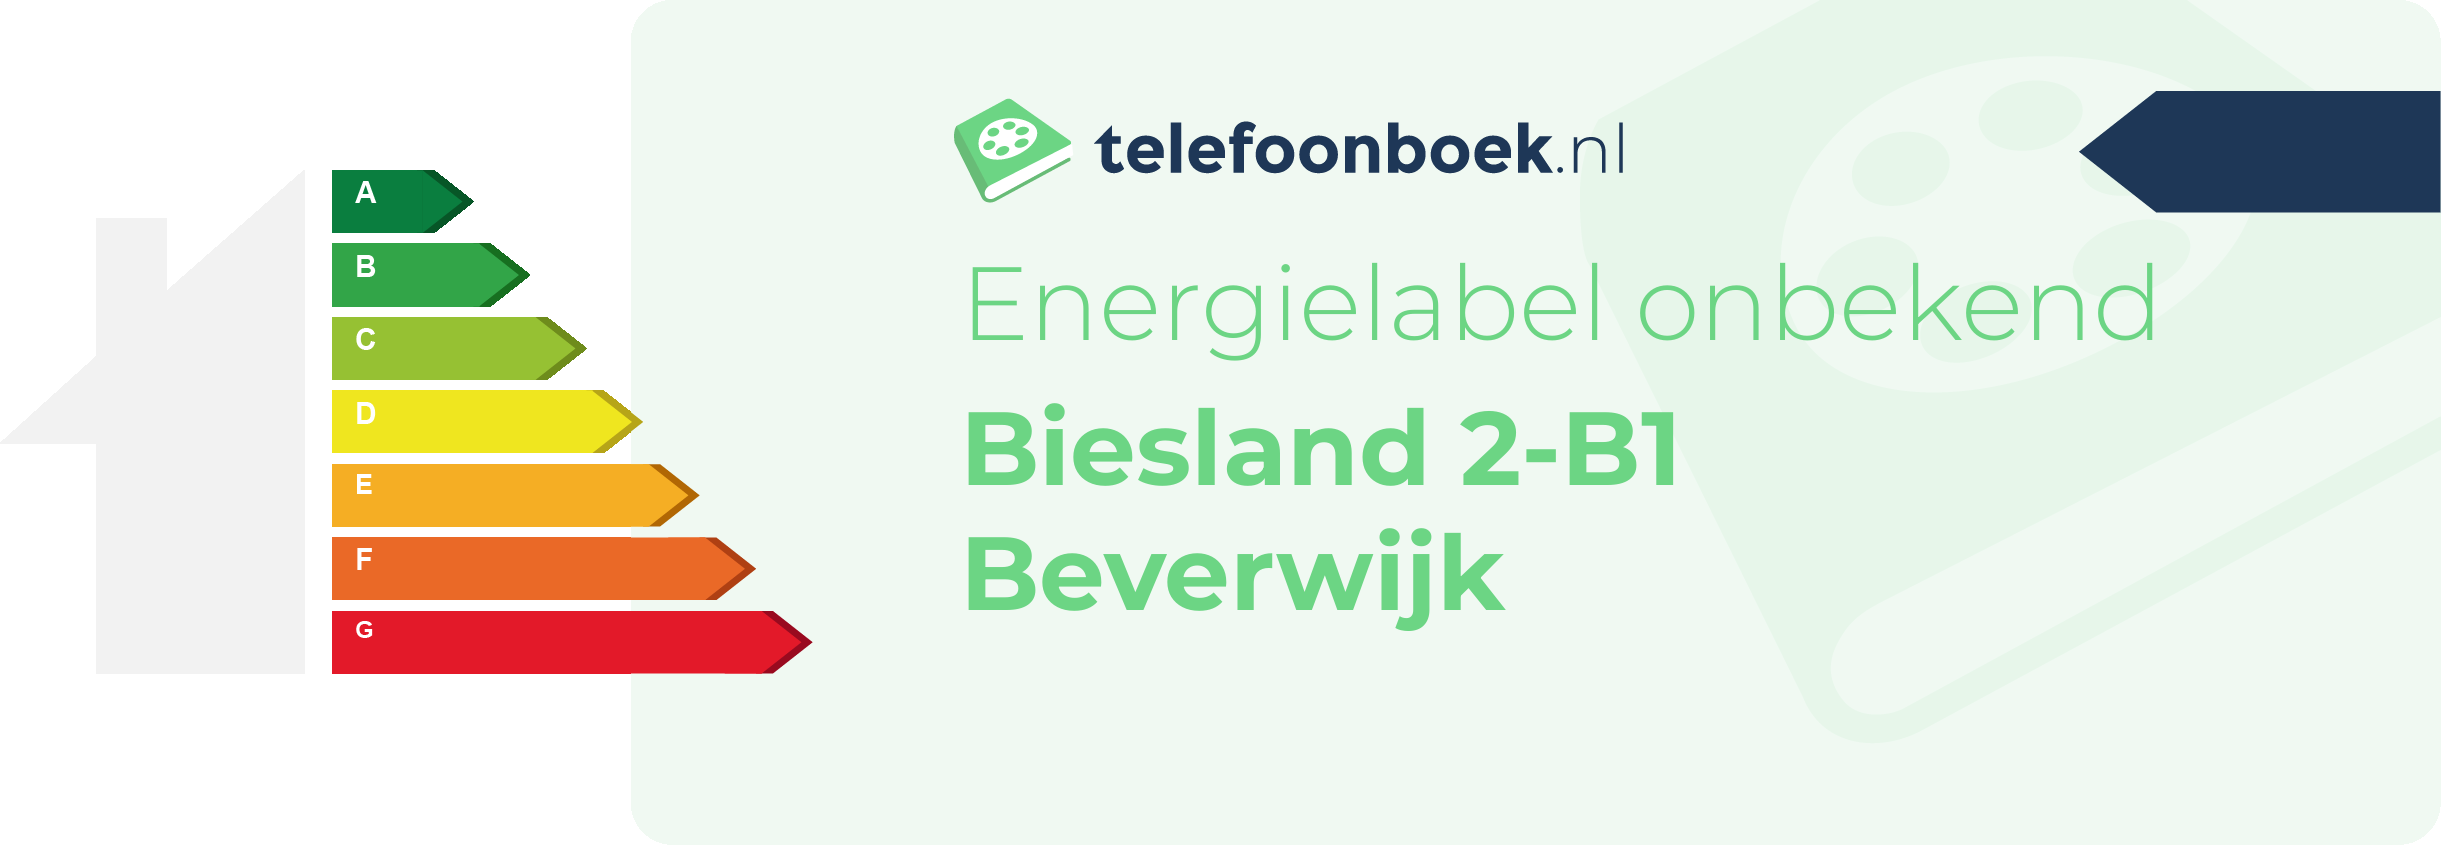 Energielabel Biesland 2-B1 Beverwijk